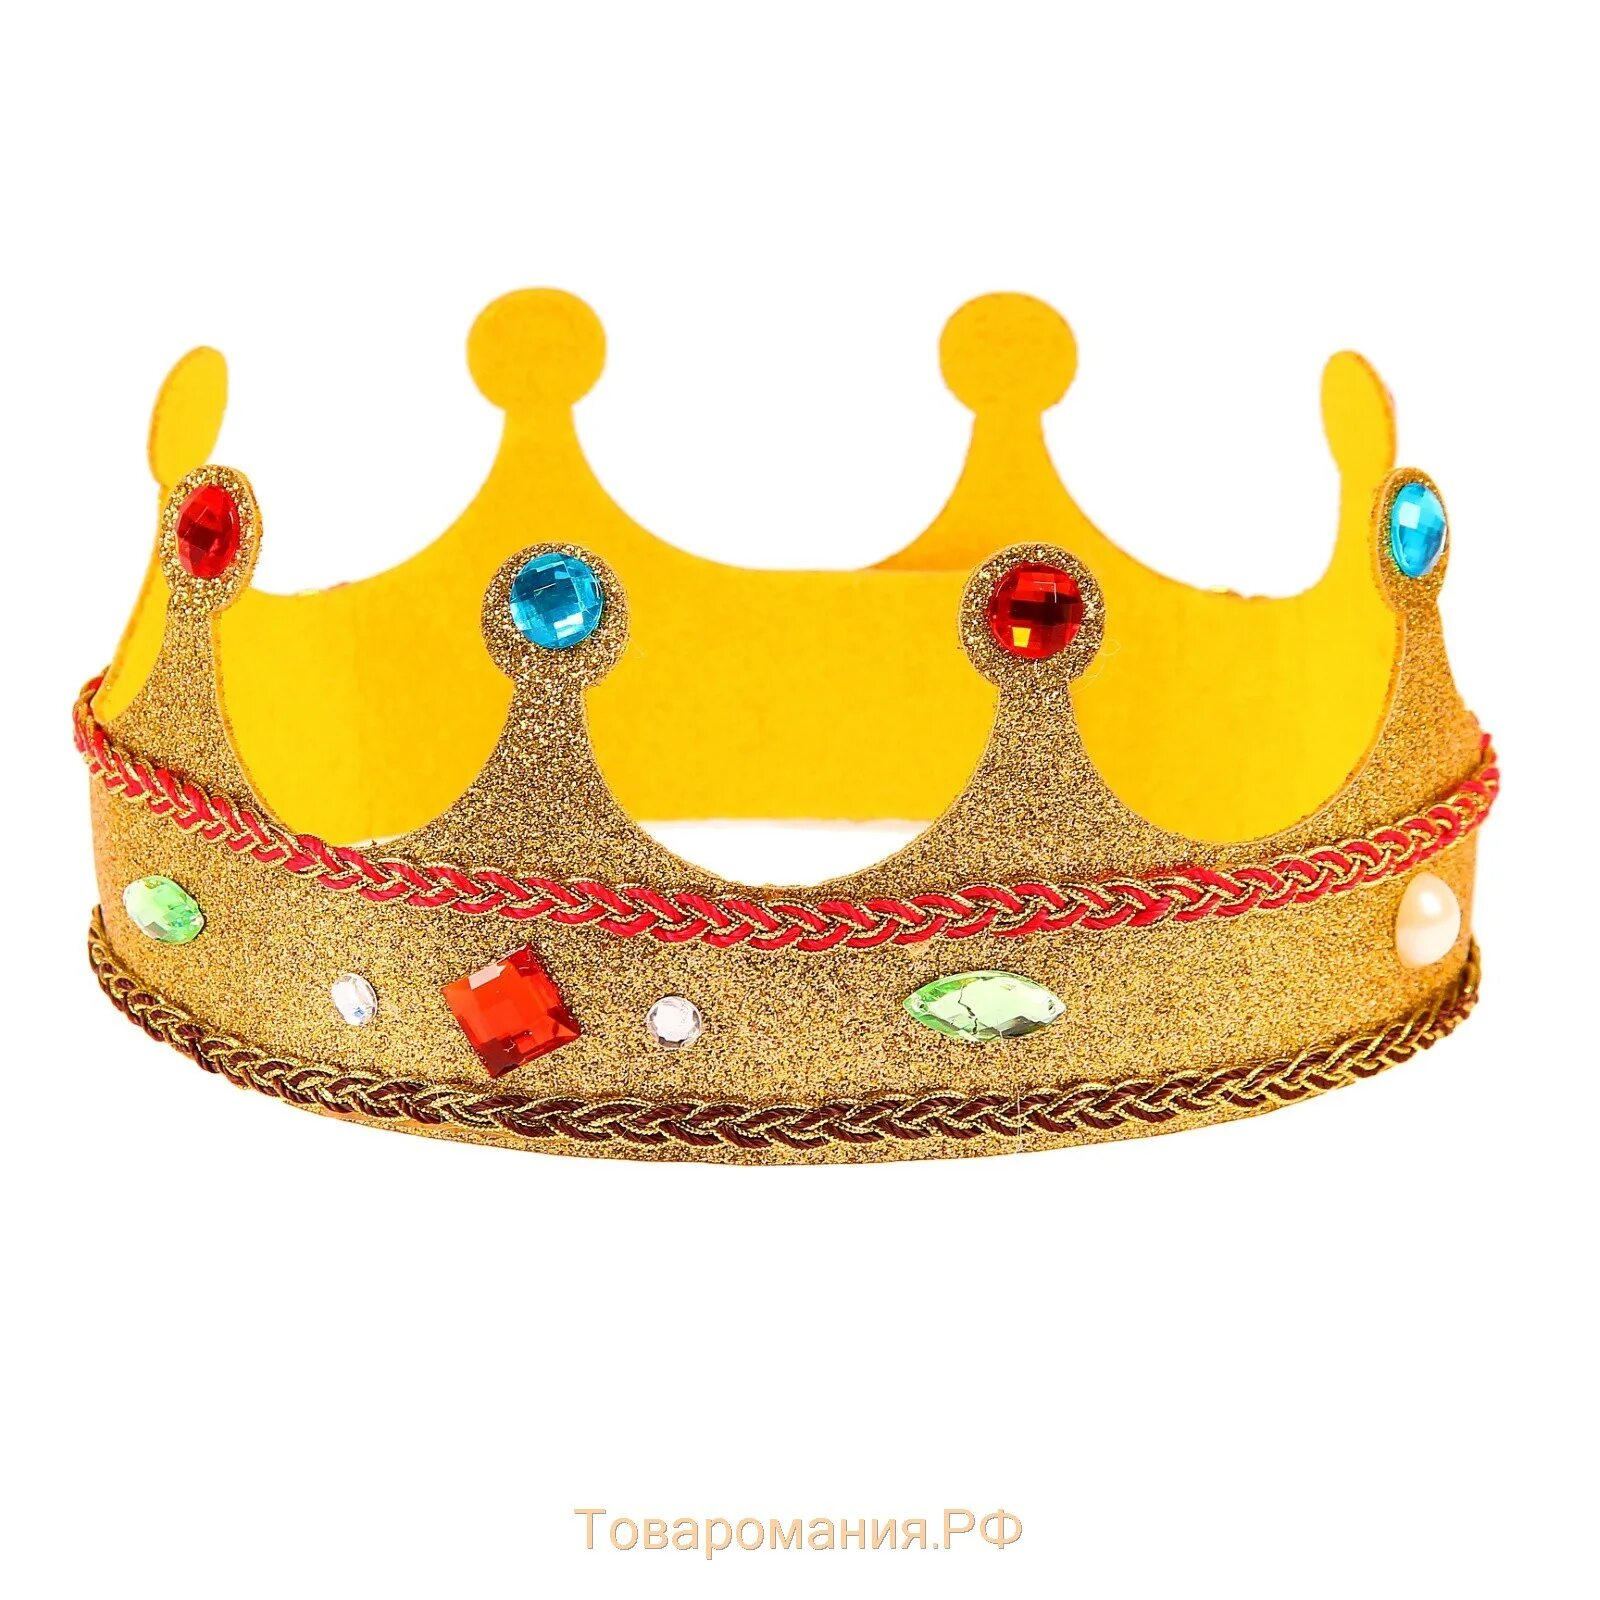 Детские короны. Корона для садика. Короны для детского праздника. Золотая корона игрушечная.